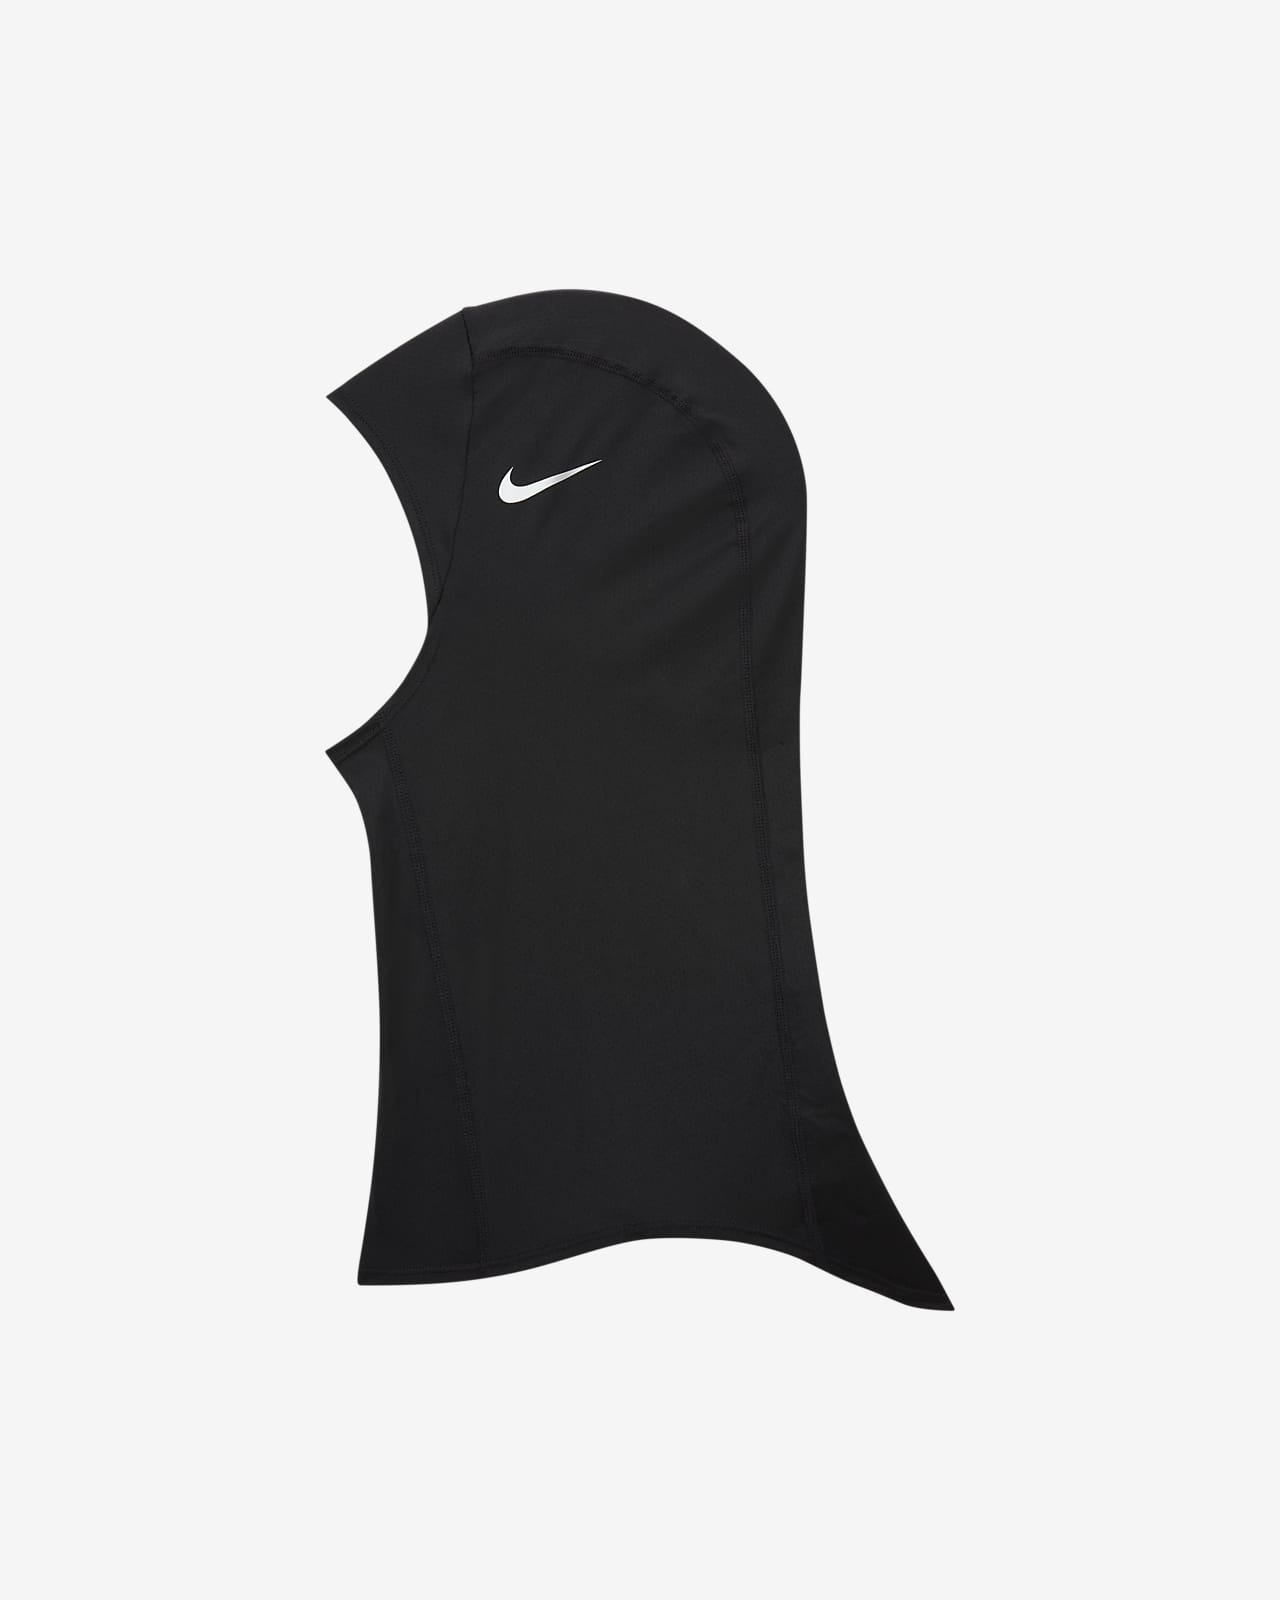 Nike Pro Hijab 2.0.